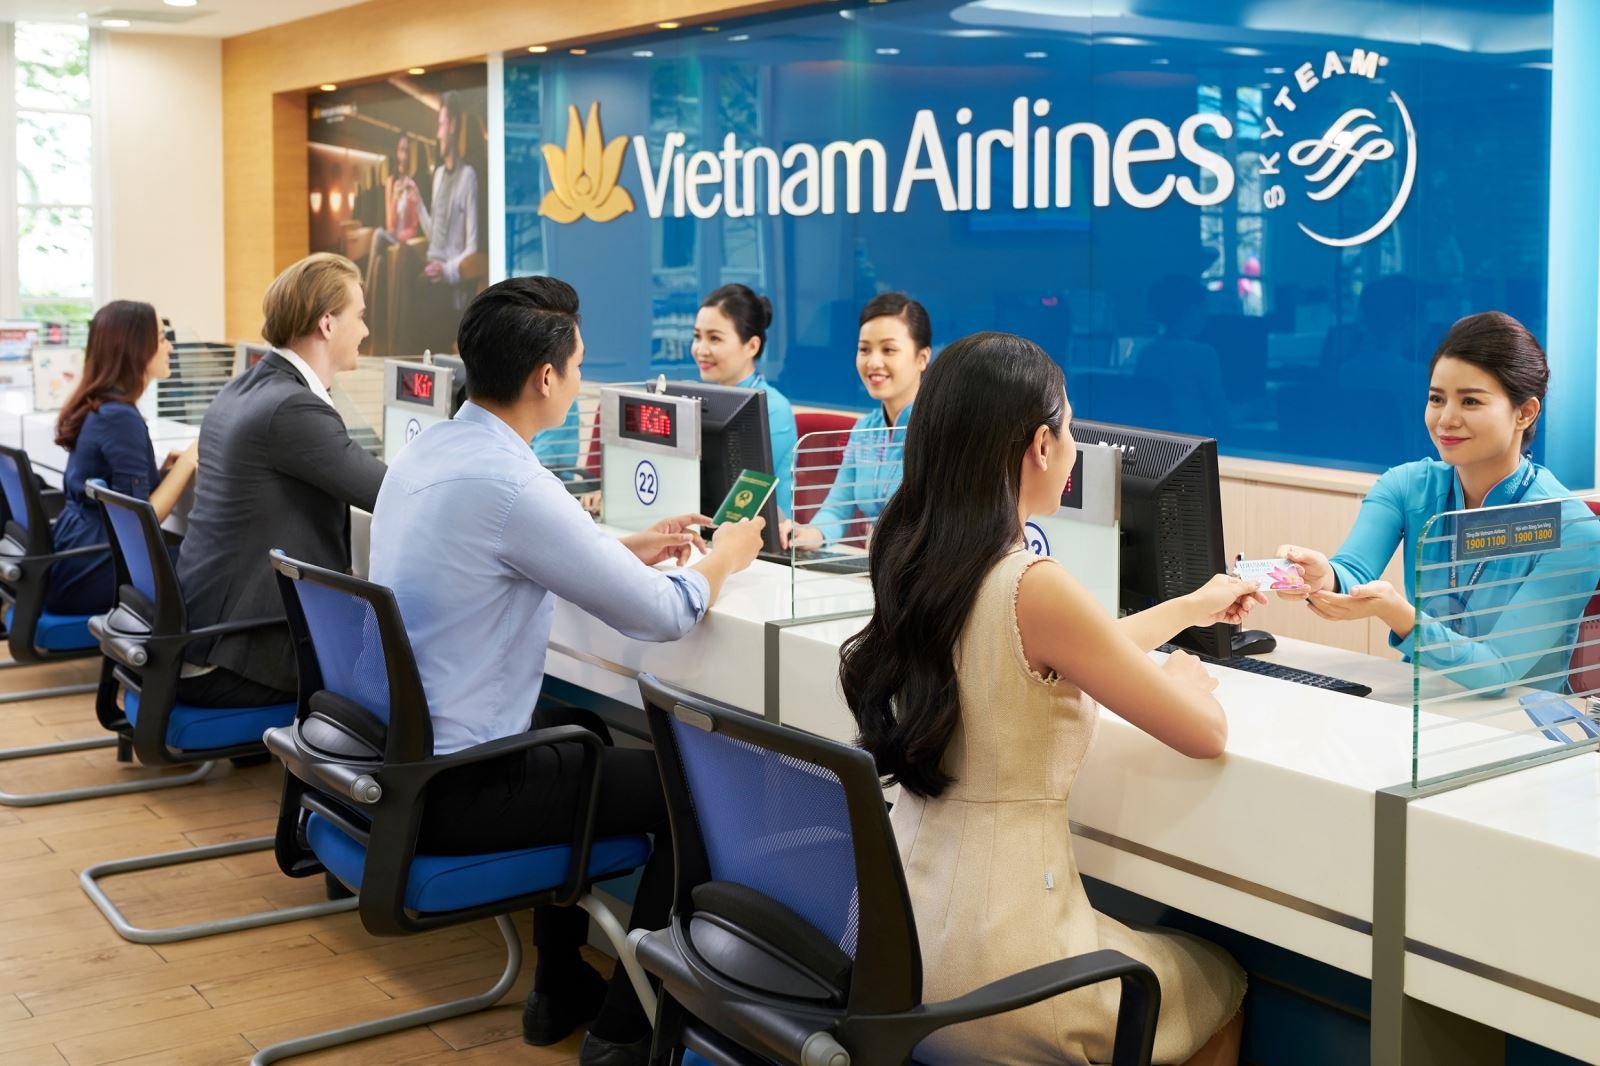 “Mua 1 tặng 1” và giảm 25% giá vé máy bay nhân dịp sinh nhật Vietnam Airlines